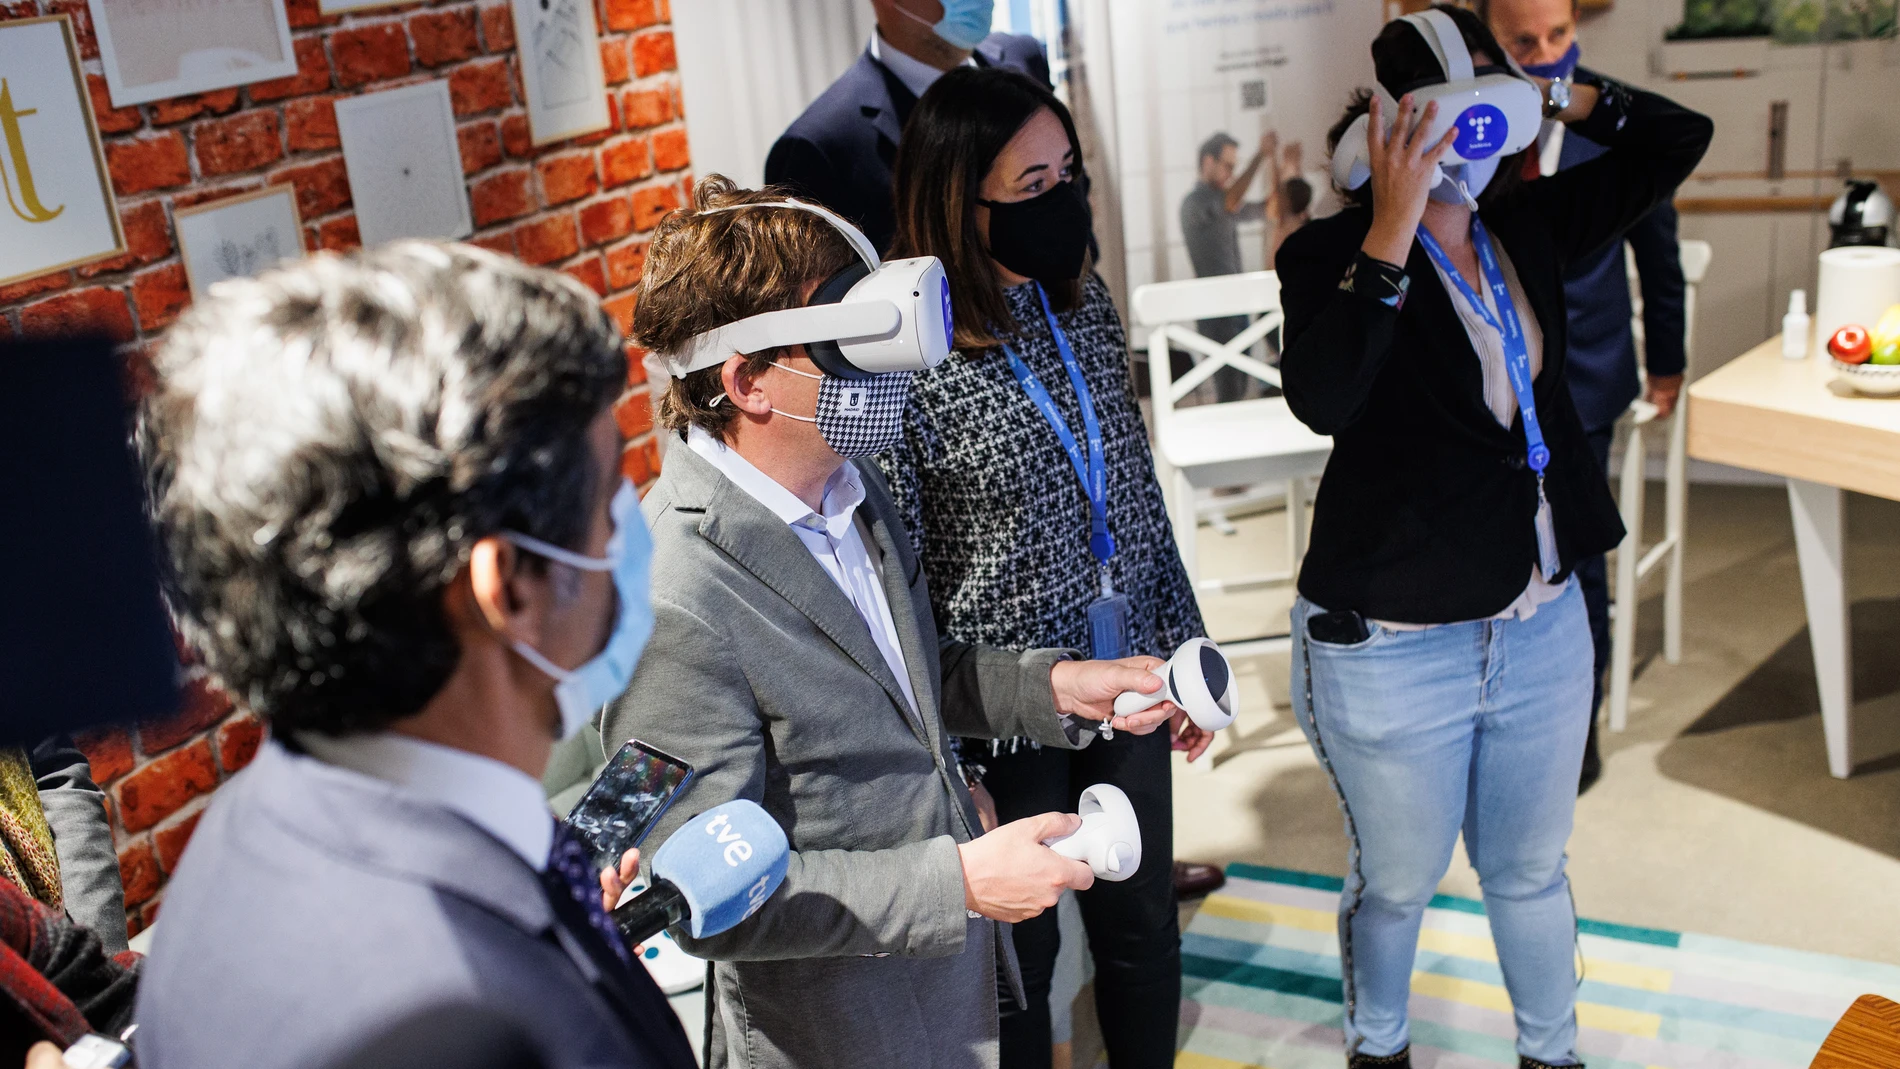 El alcalde de Madrid, José Luis Martínez-Almeida (2i), prueba unas gafas virtuales durante una visita al nuevo Espacio 5G de Telefónica